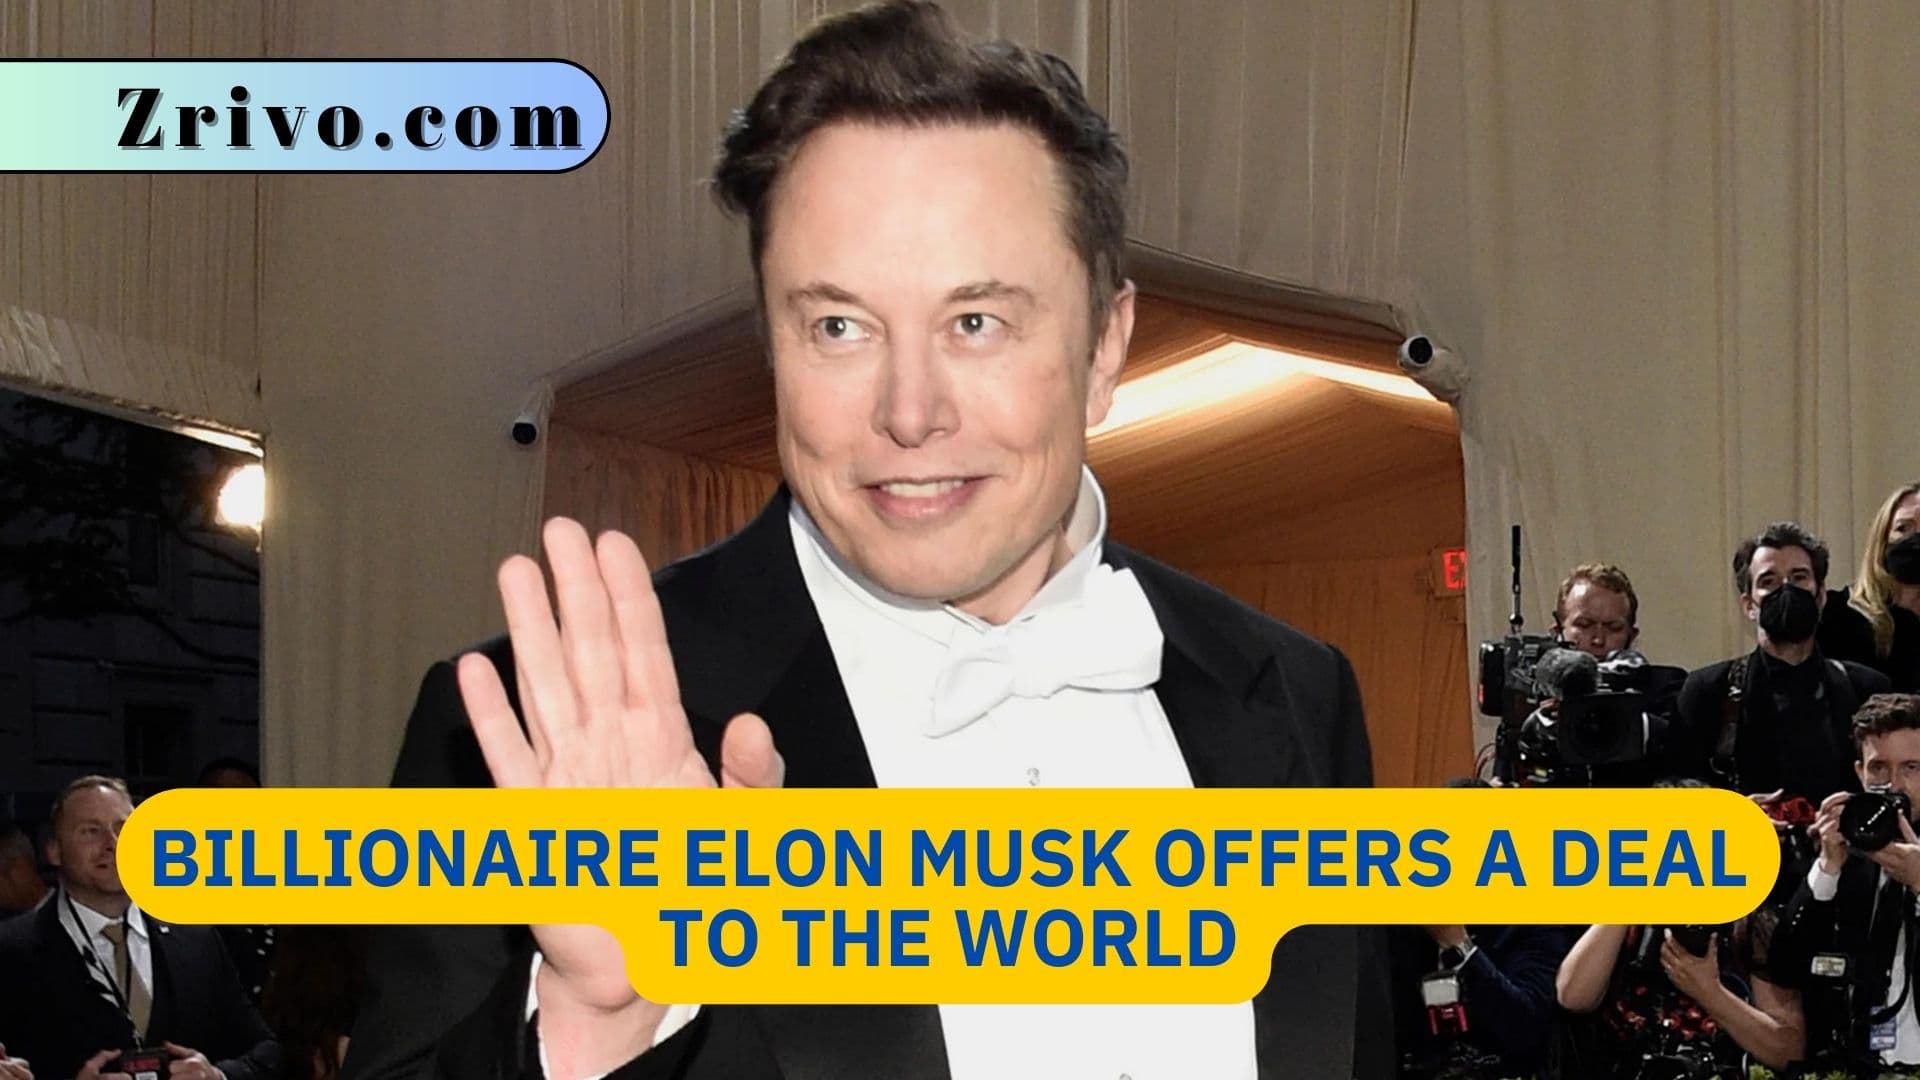 Billionaire Elon Musk Offers a Deal to the World